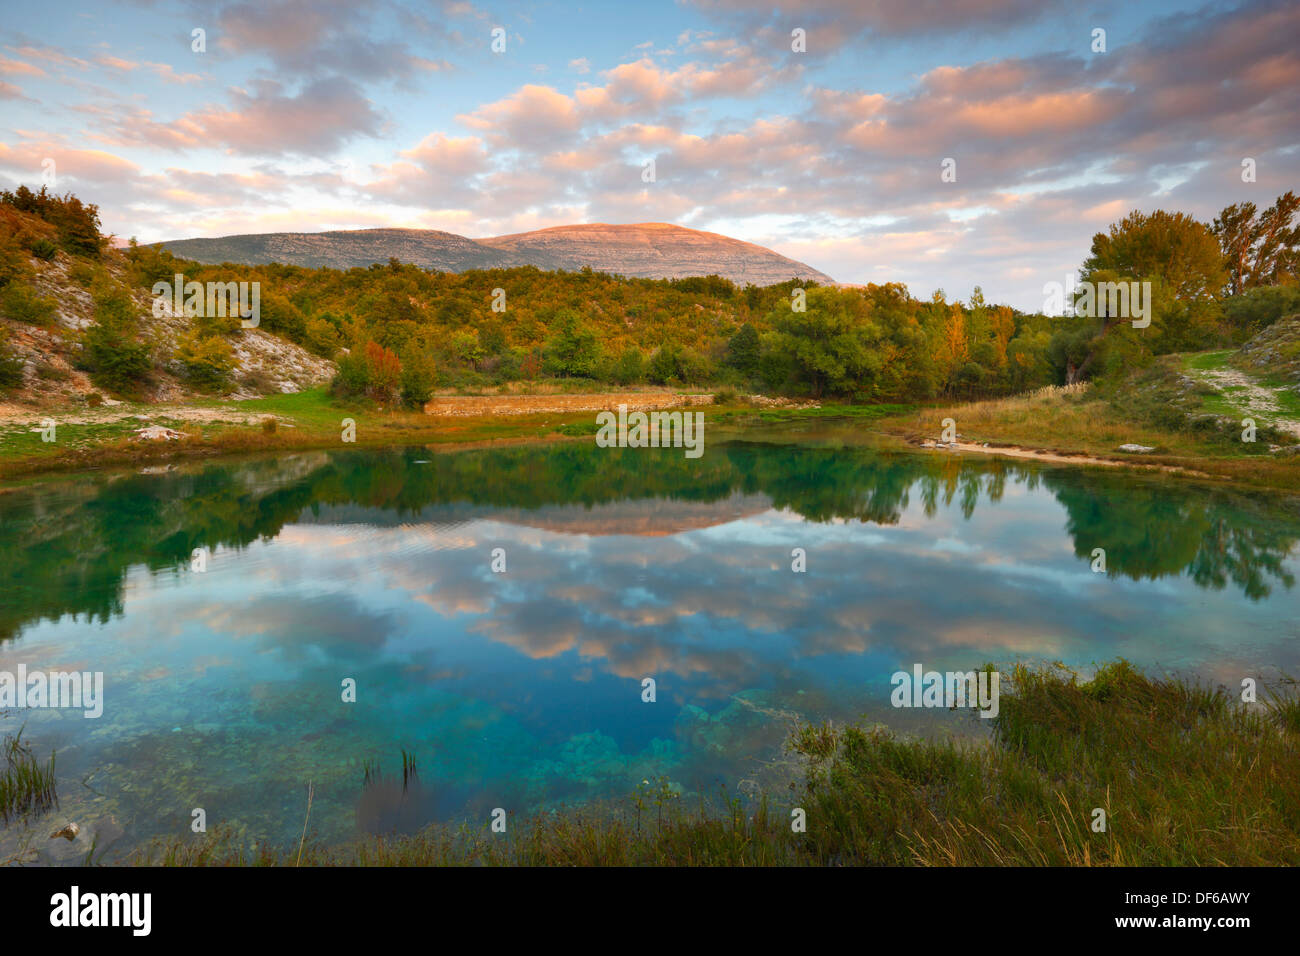 Quelle des Flusses Cetina in Kroatien Stockfoto